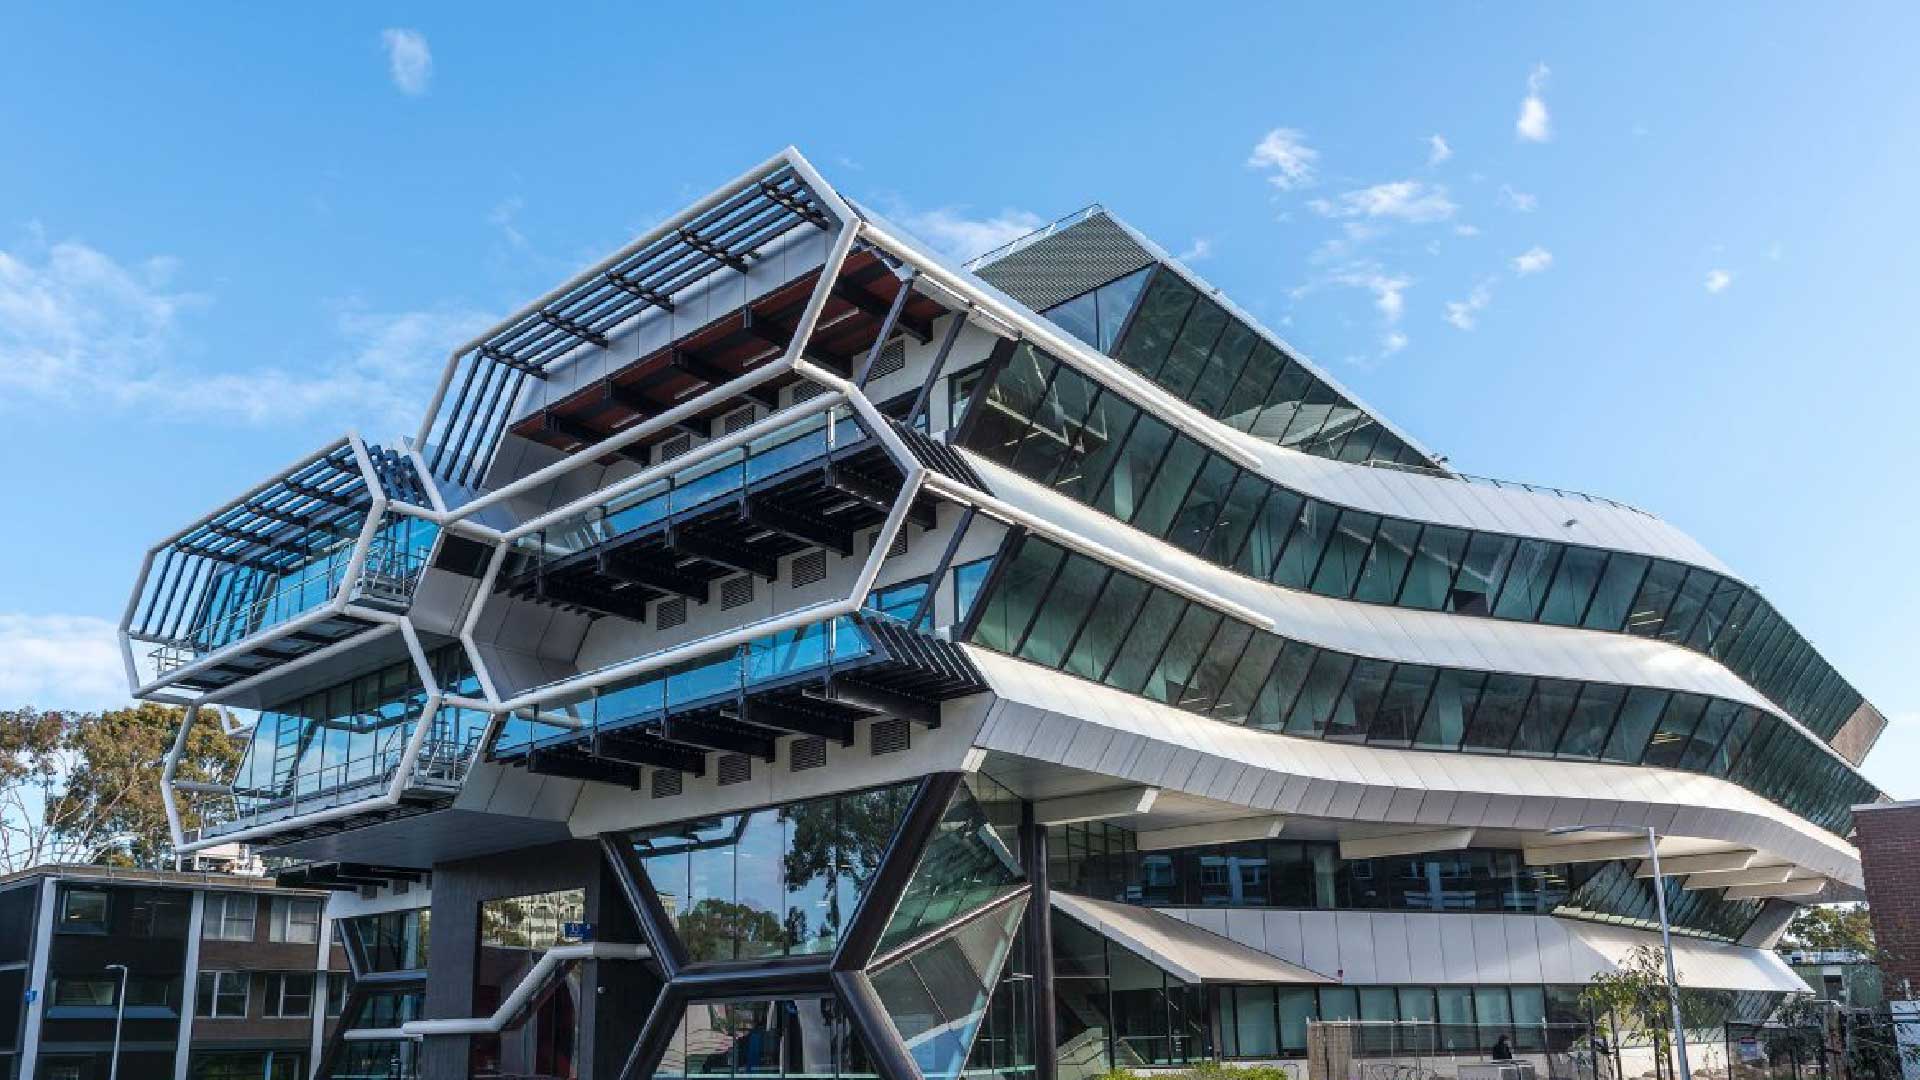 Architecture universities. Университет Монаш Мельбурн. Кампус университета Монаша Мельбурн, Австралия. Университет Монаш Мельбурн Архитектор. Кампус университета Монаша.